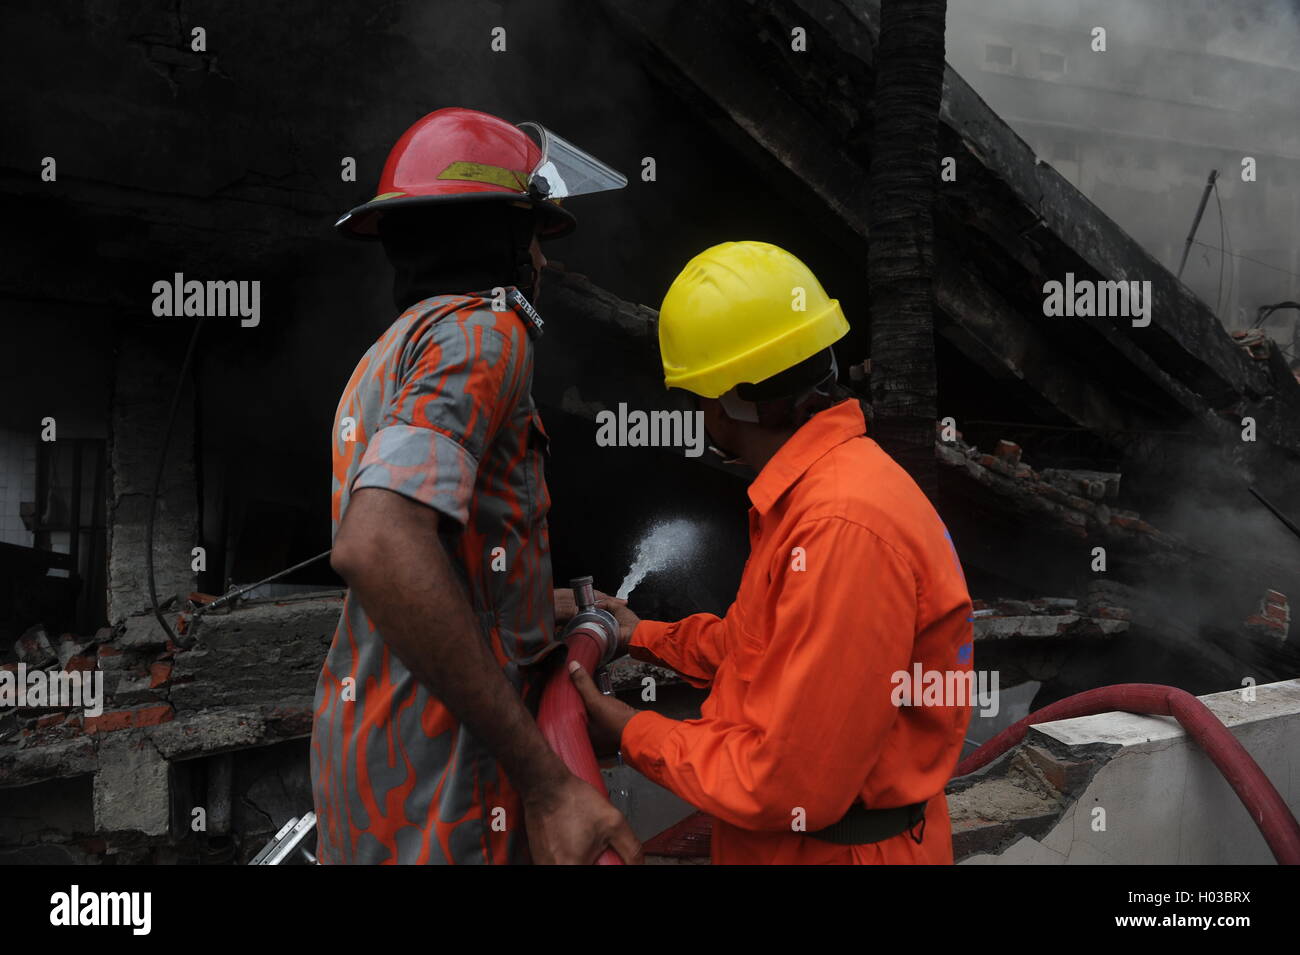 Les pompiers travaillent d'éteindre un incendie dans une usine d'emballage en Tampaco Tongi zone industrielle de Dhaka, Bangladesh. Banque D'Images